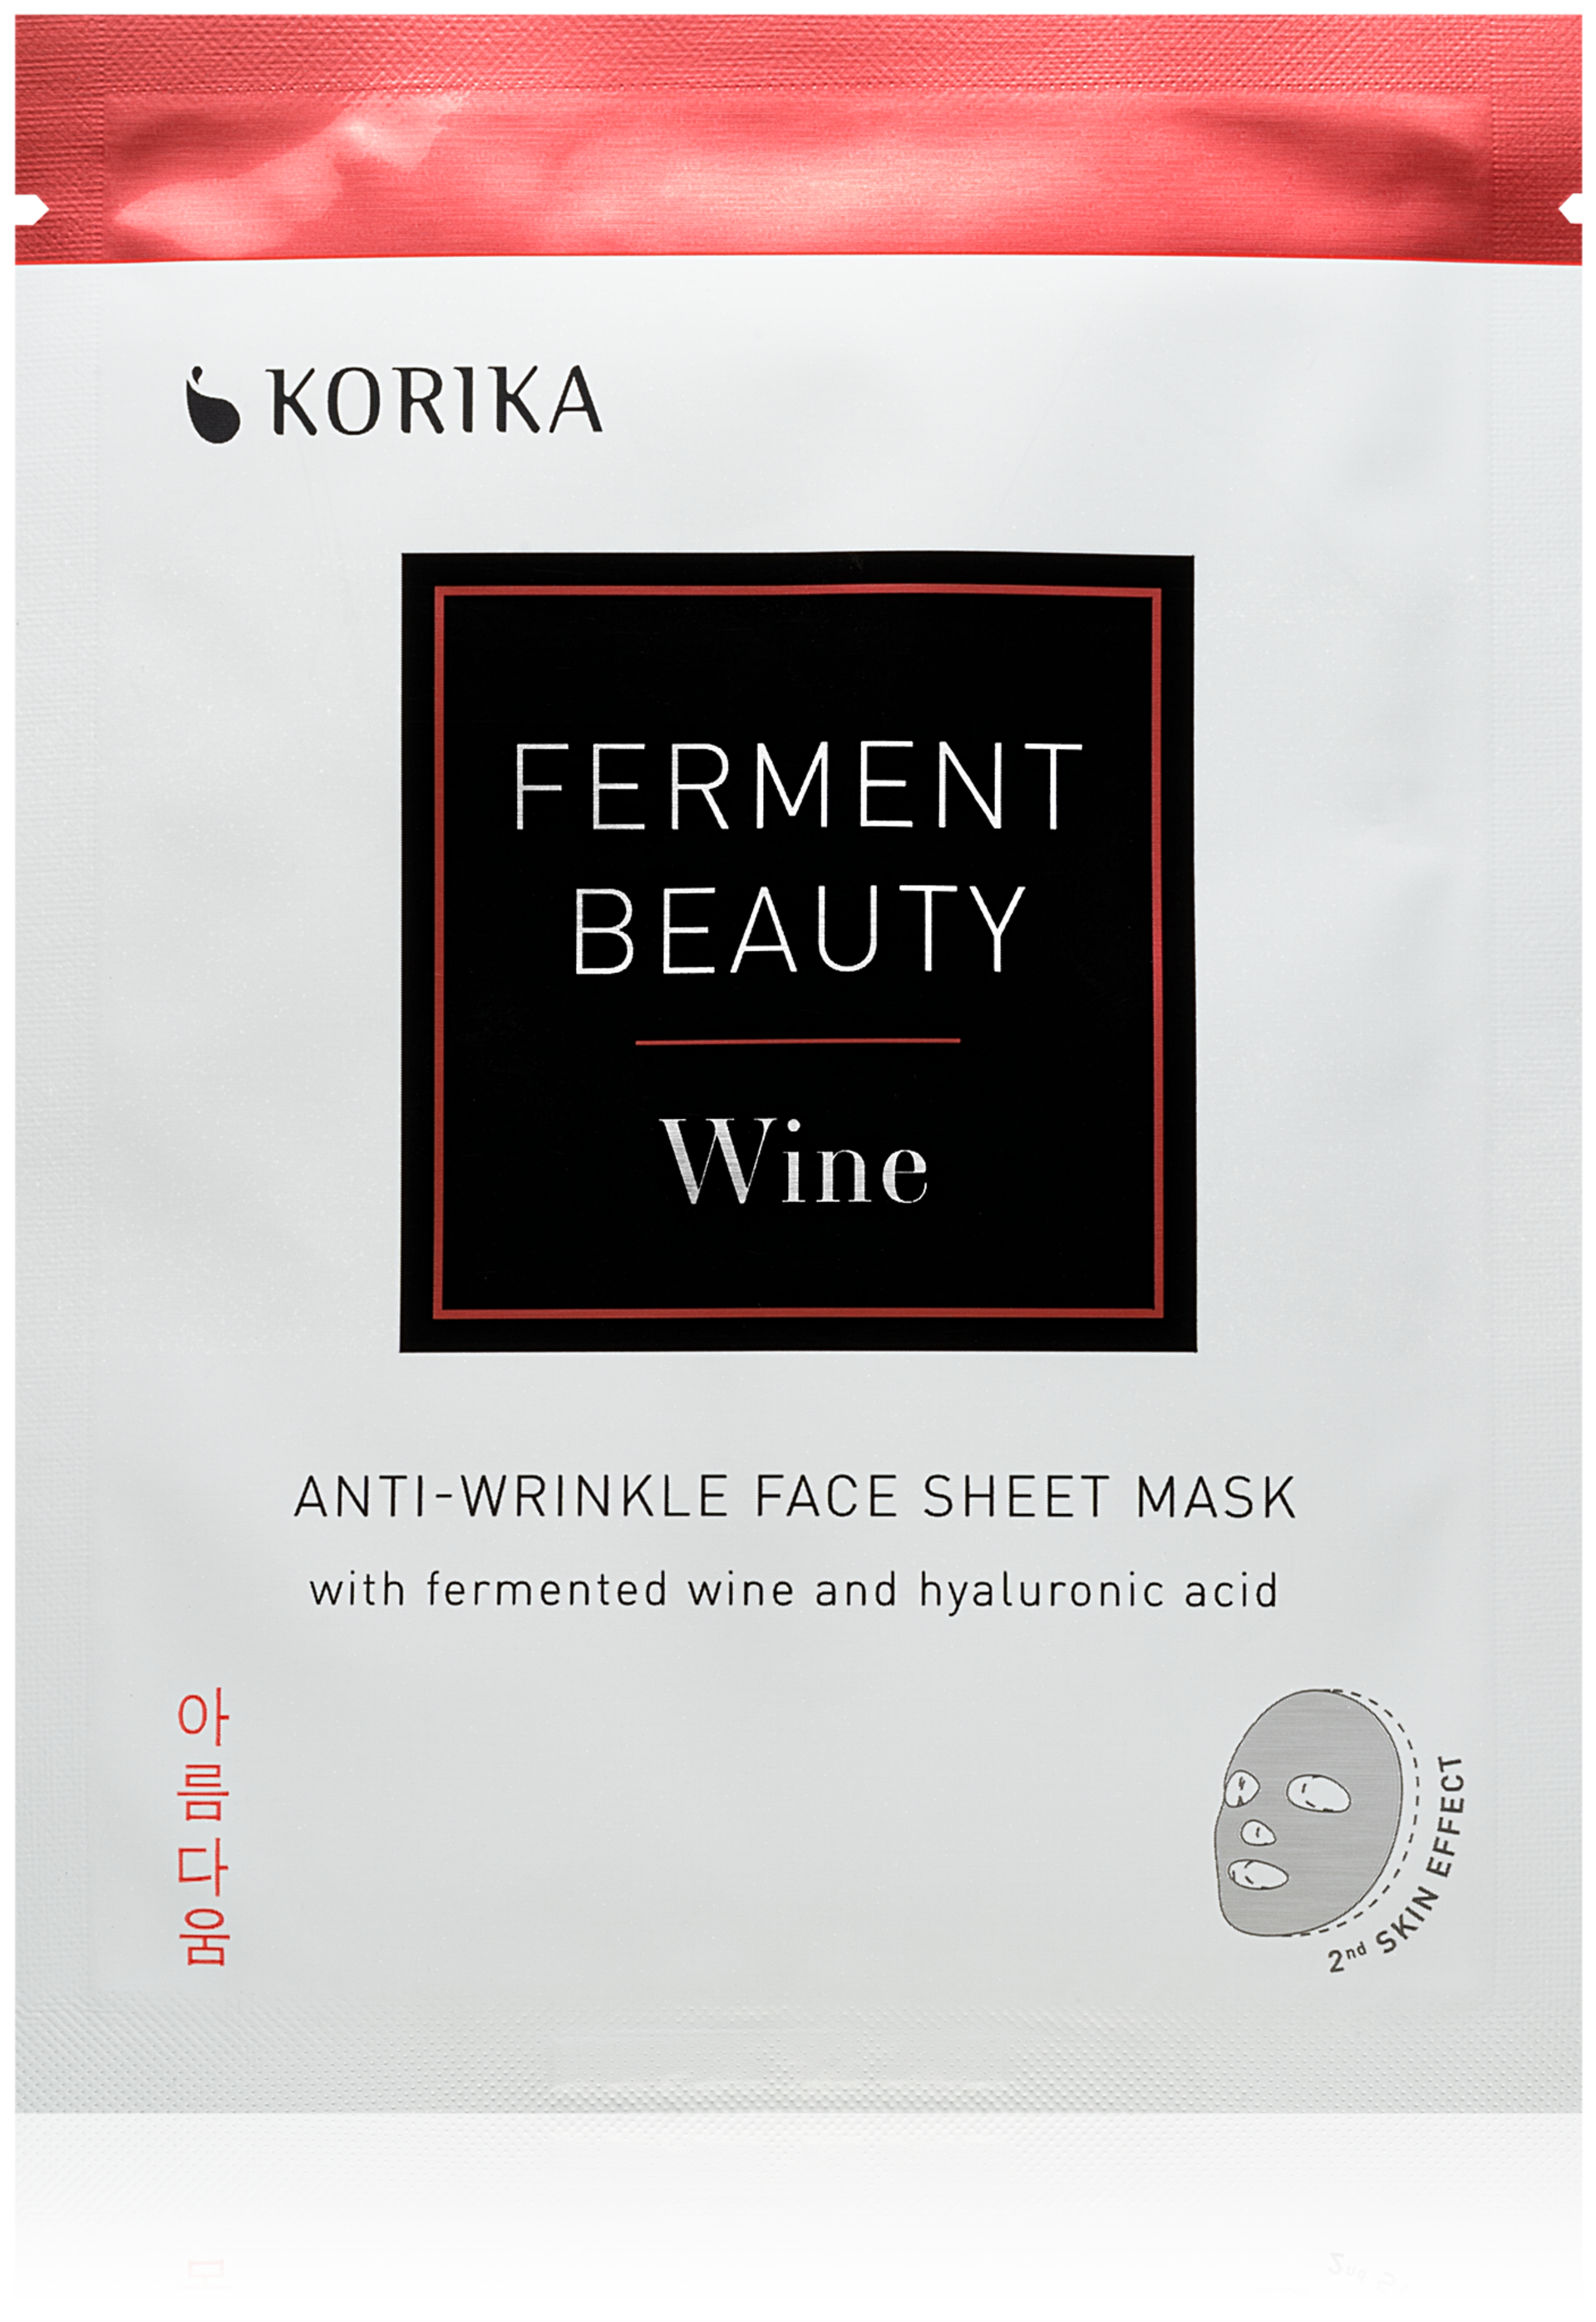 Plátýnková maska proti vráskám KORIKA FermentBeauty Mask with Fermented Wine and Hyaluronic Acid